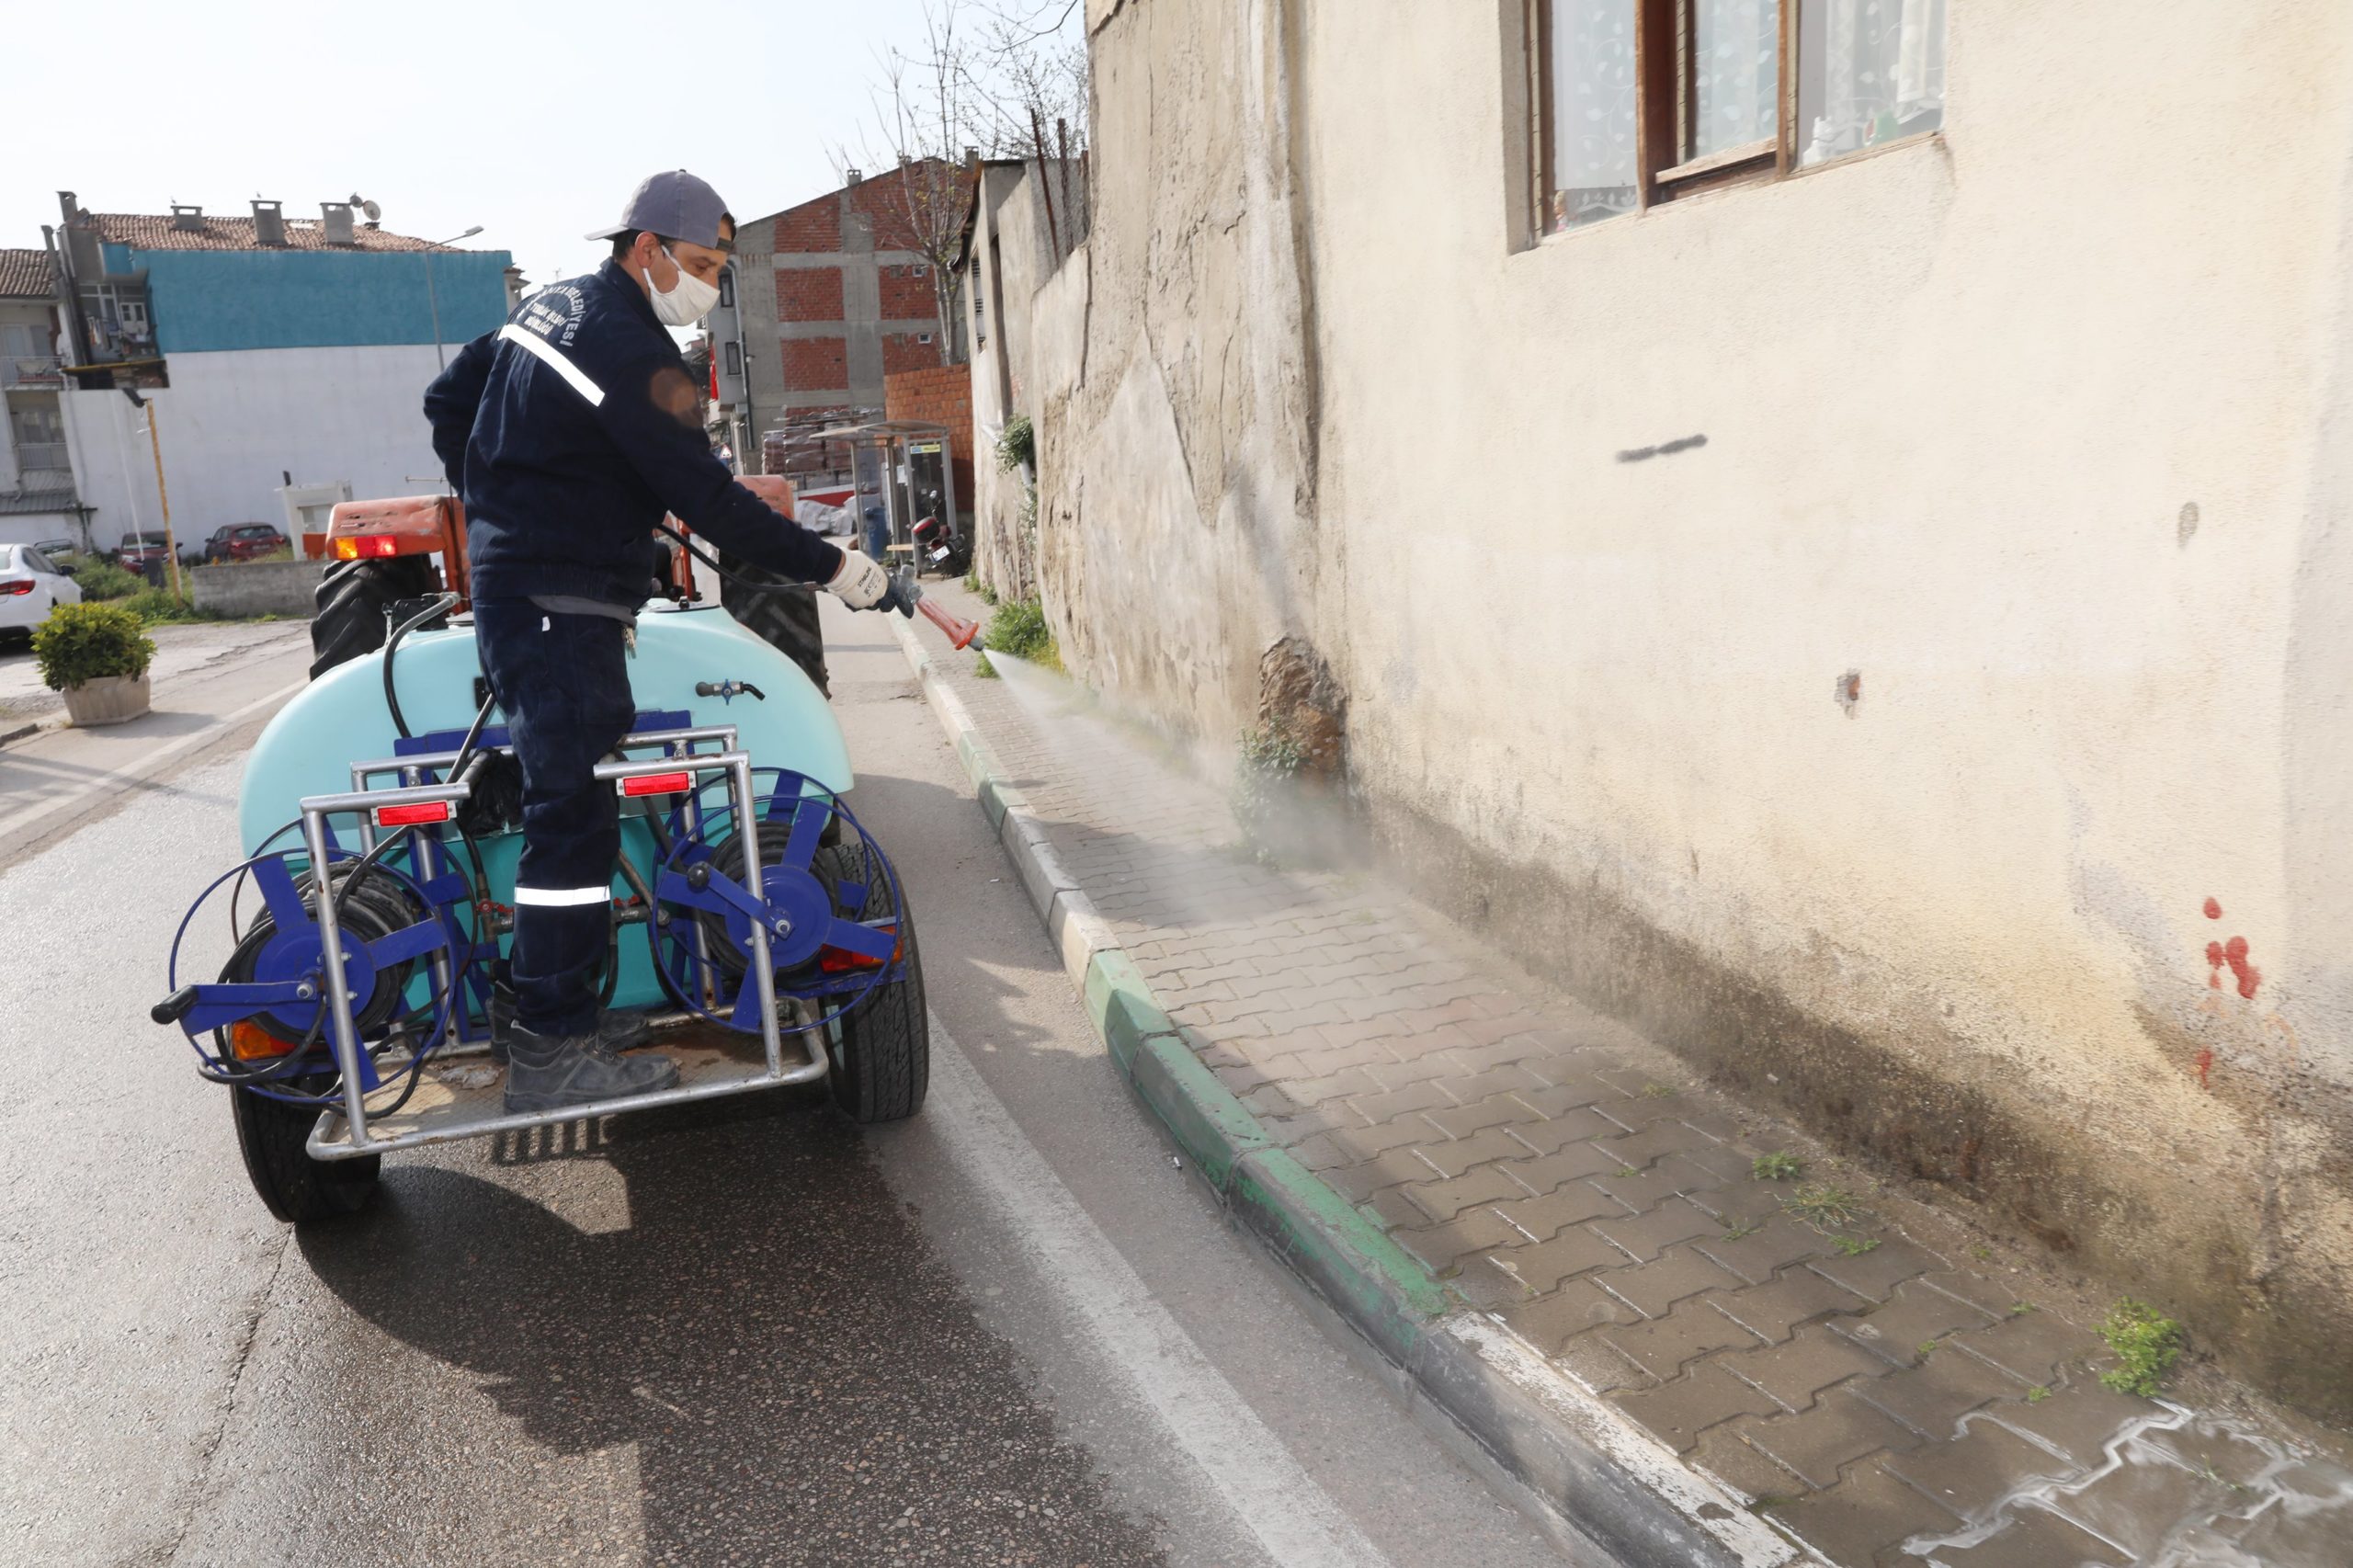  Mudanya Belediyesi, Koronavirüs Varyantlarına Karşı Temizlik Çalışmalarını Yoğunlaştırdı